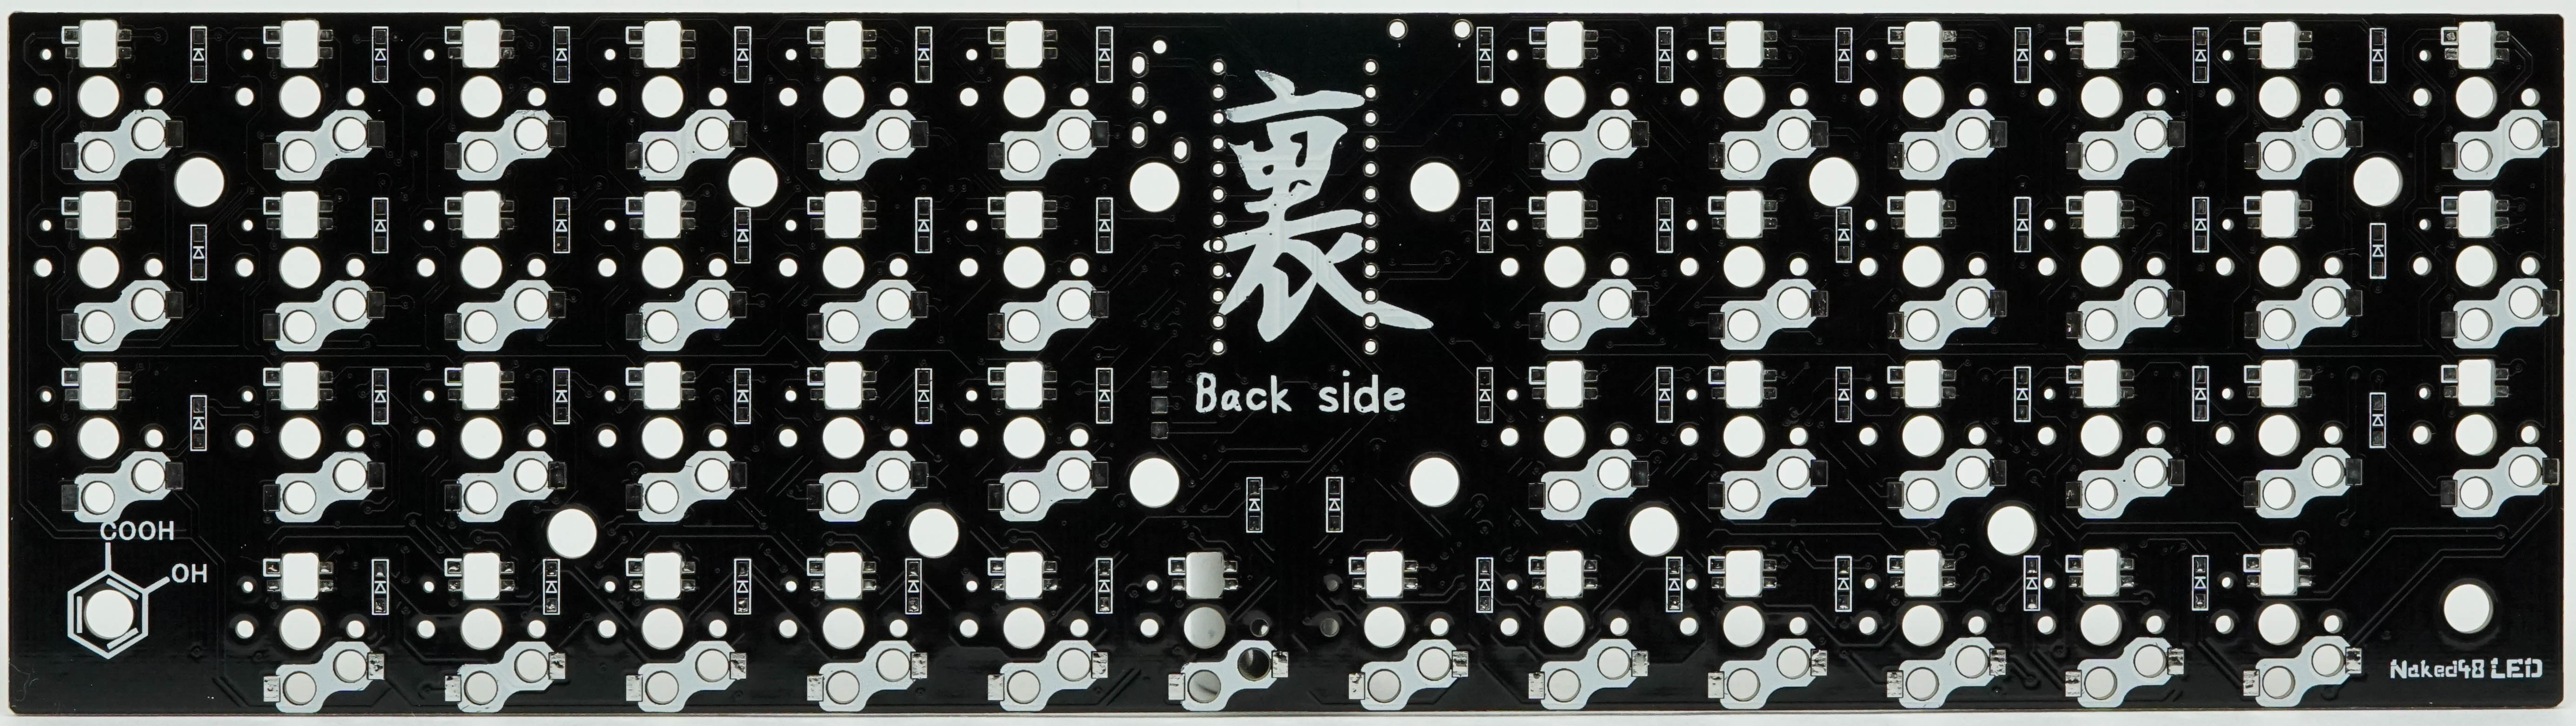 Naked48LED PCB Back